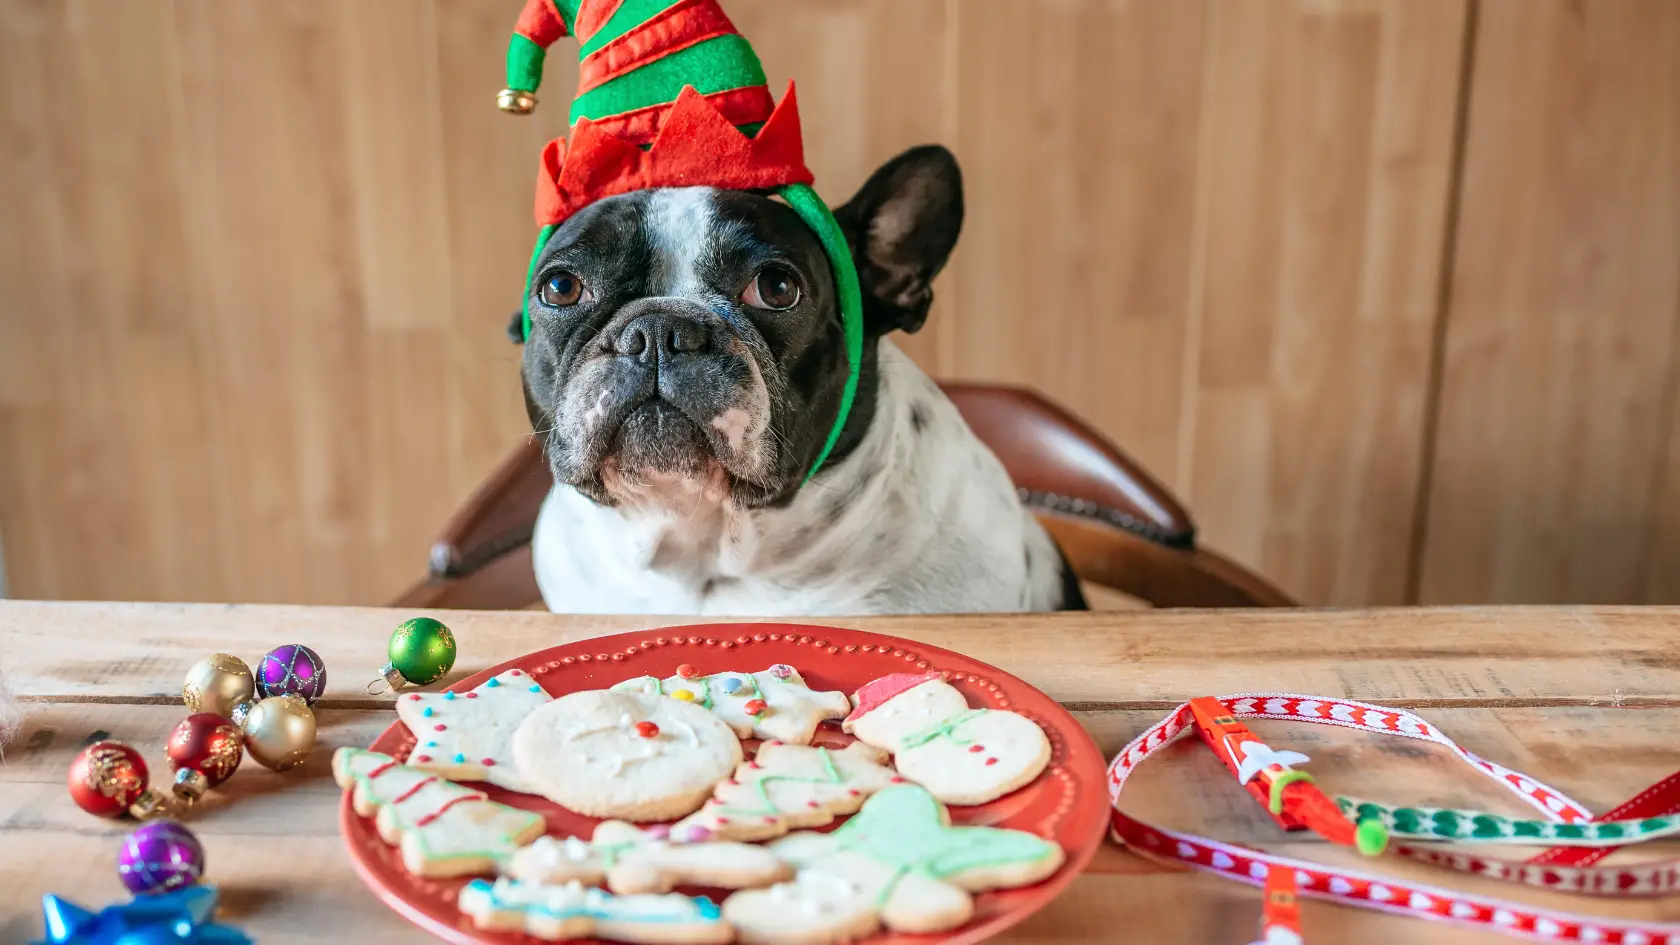 dog christmas cookies